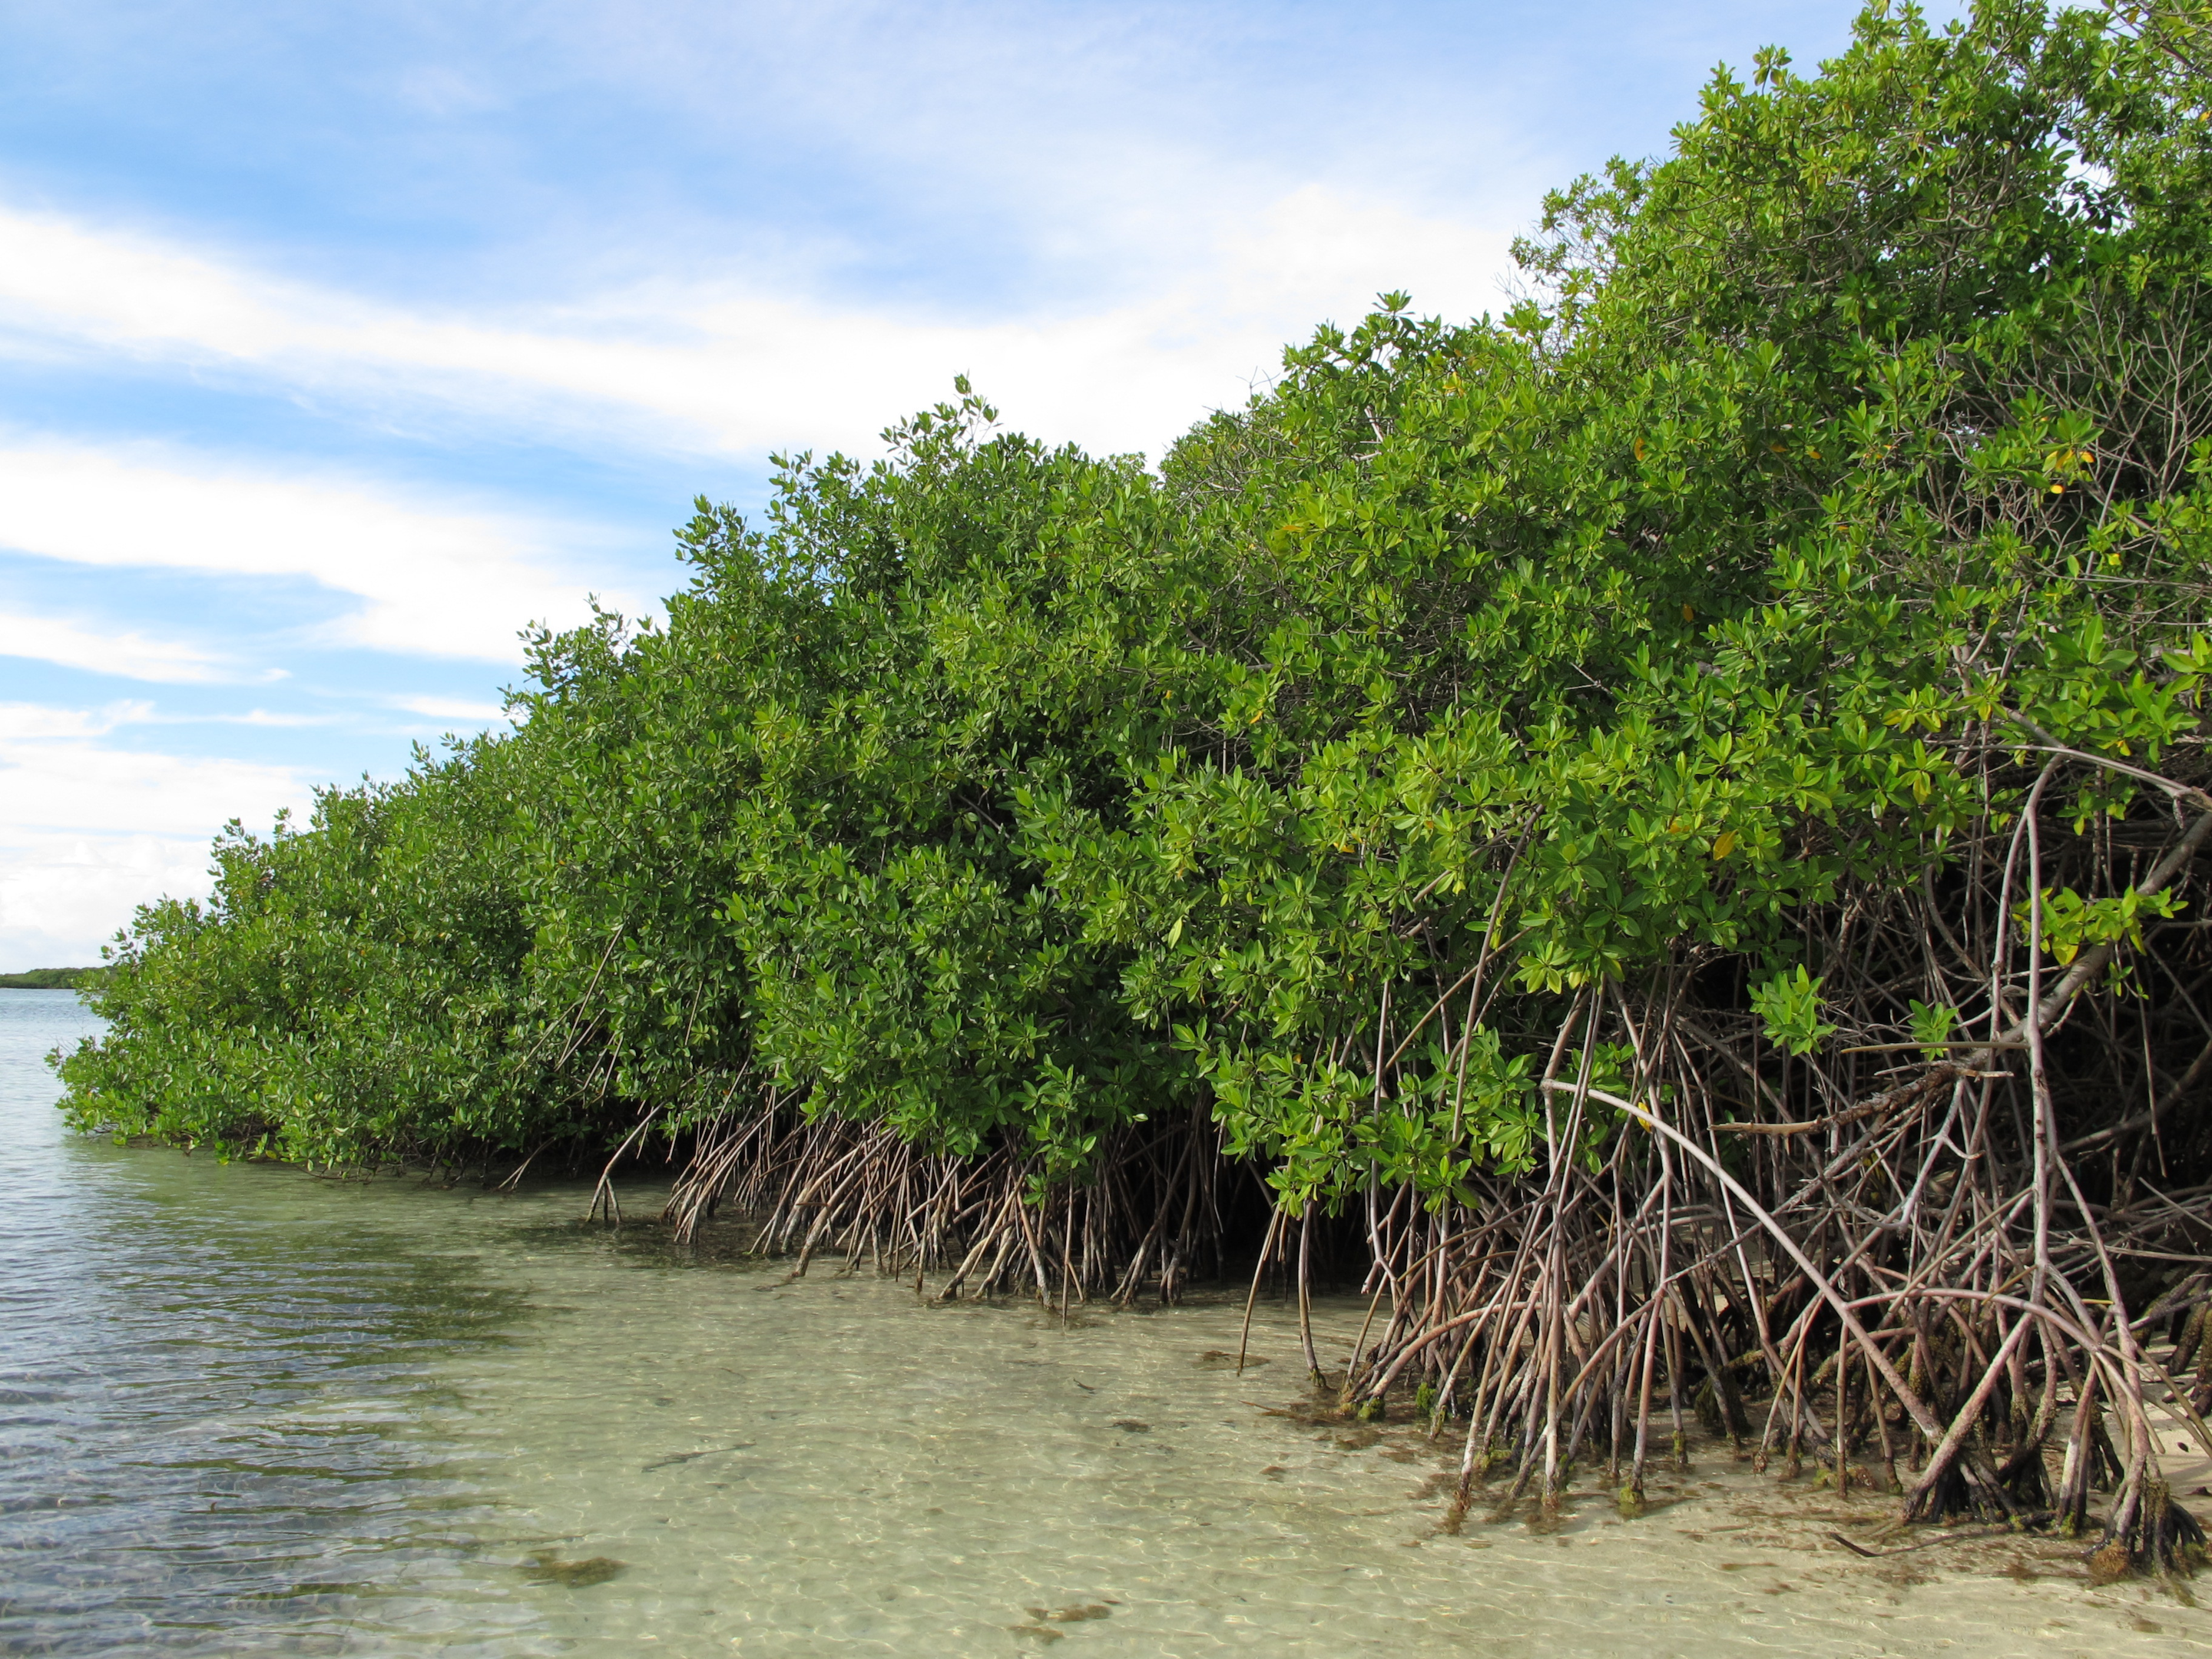 red mangroves, mangroves